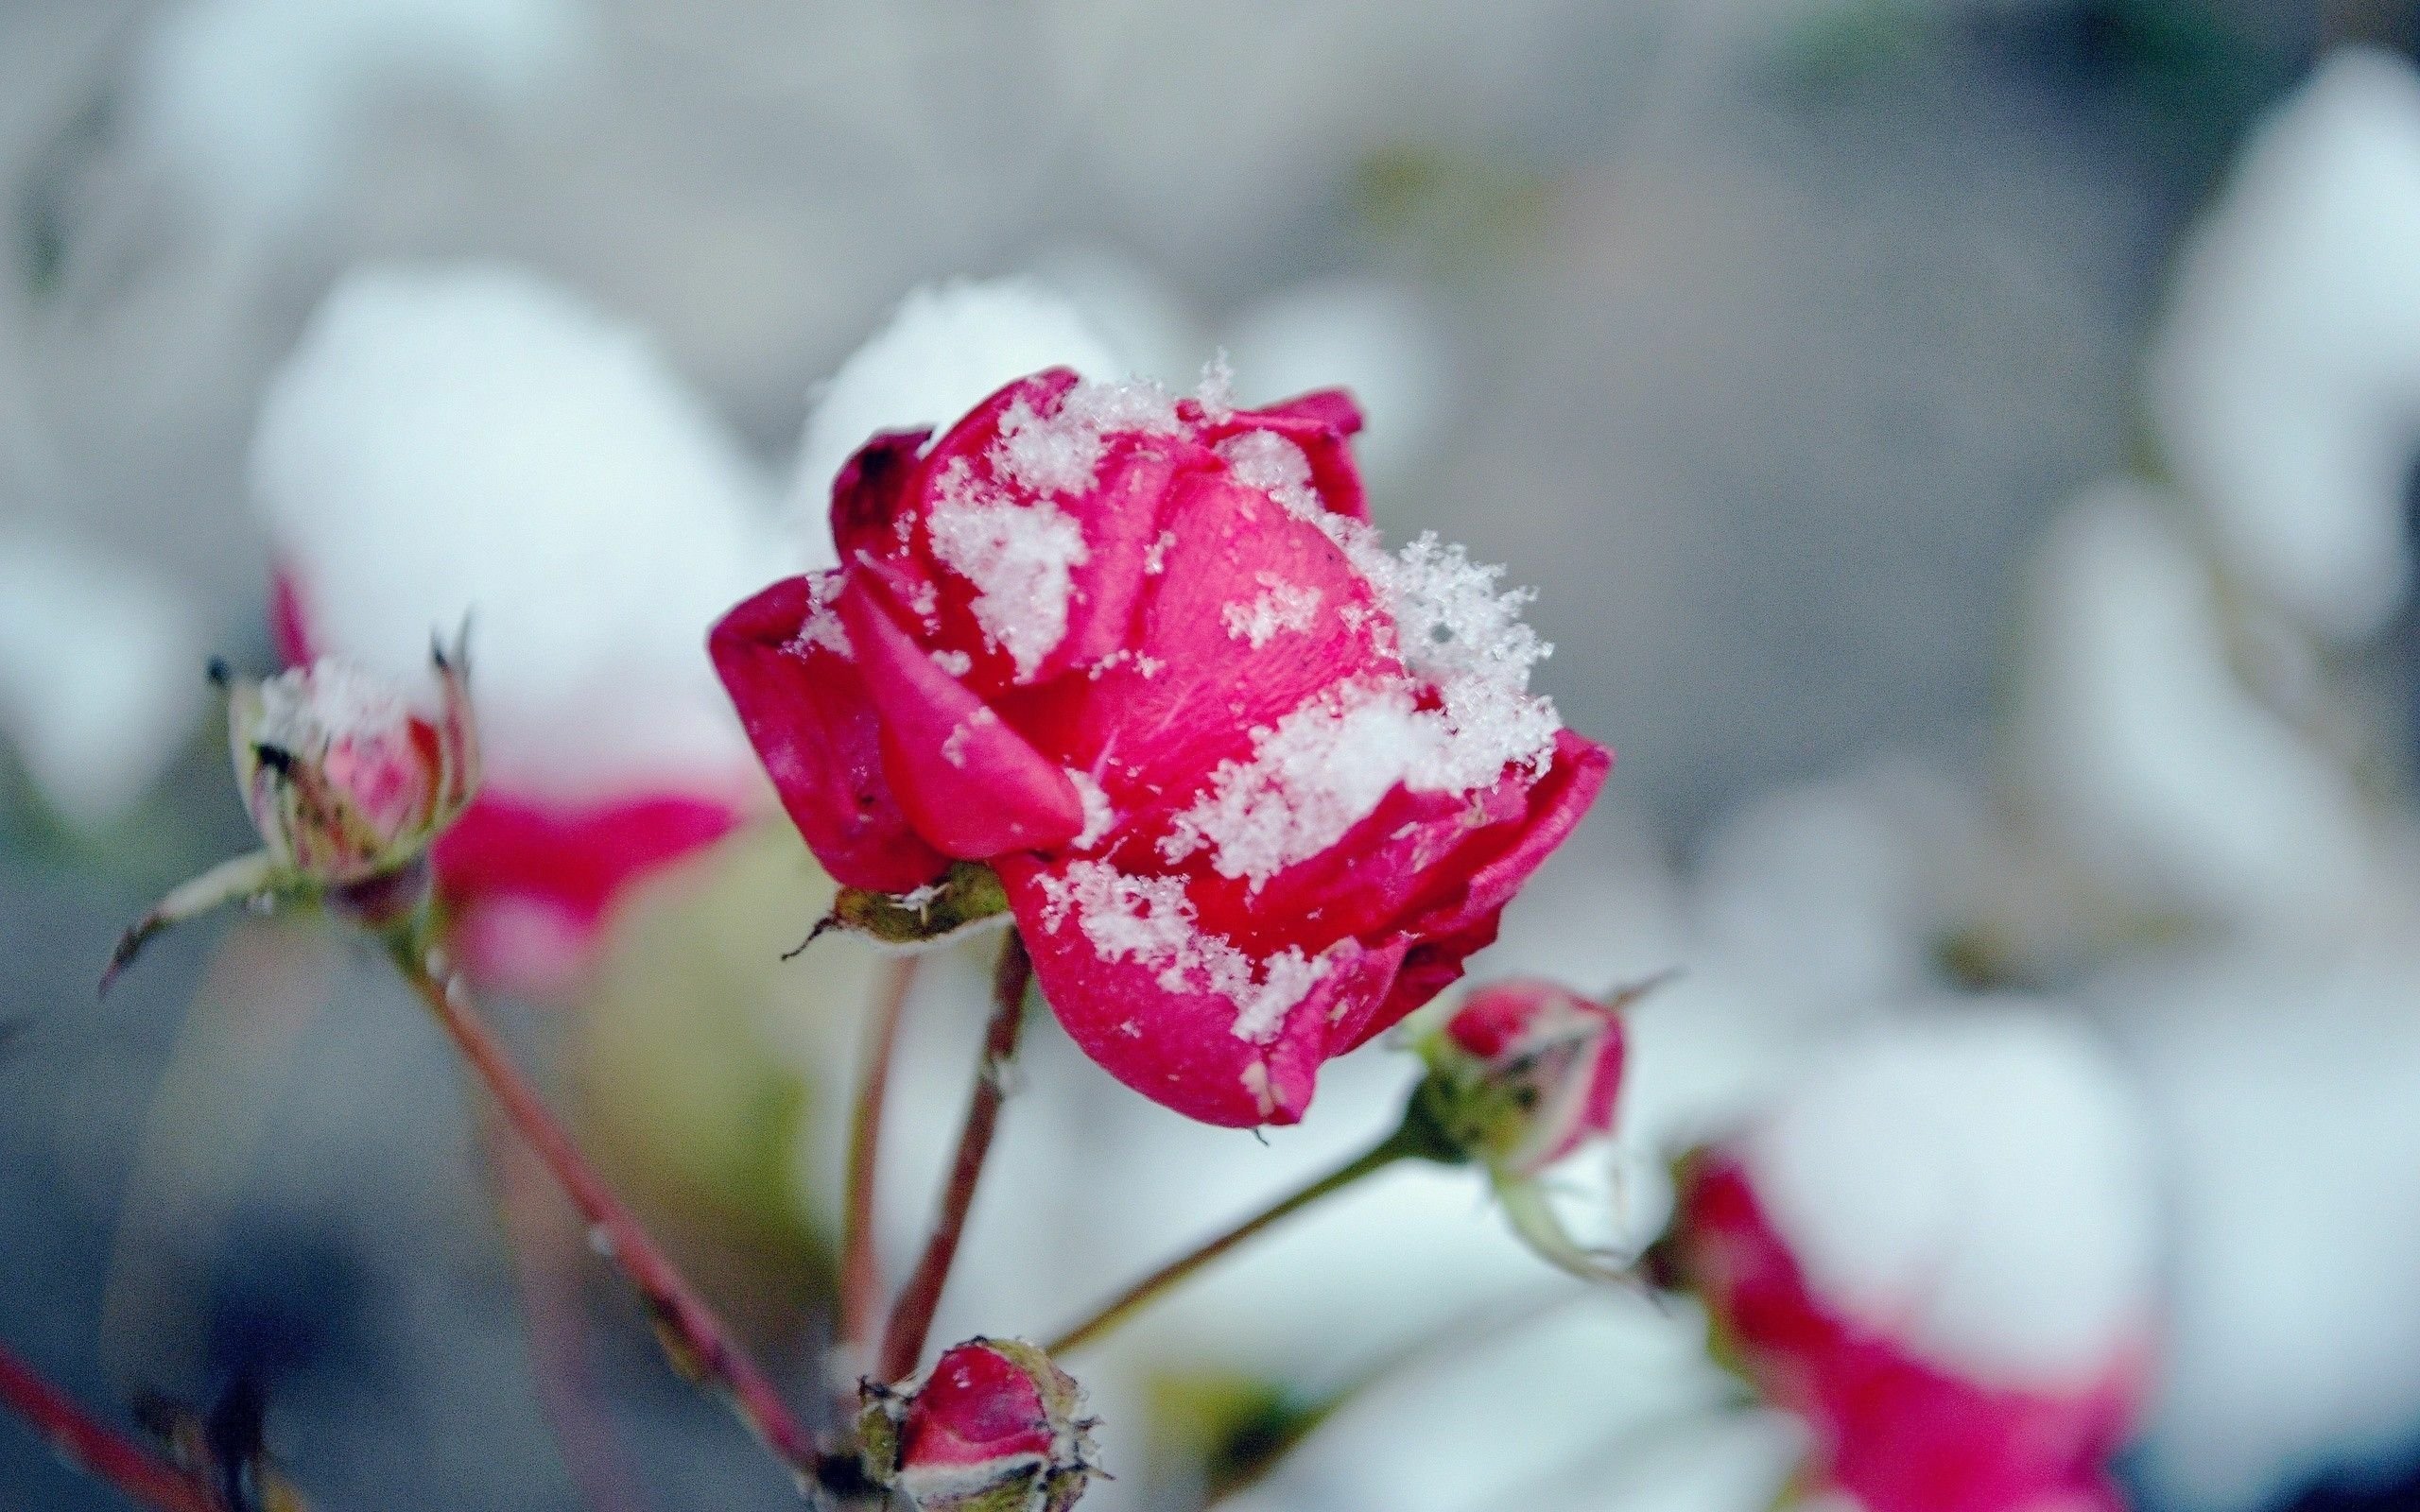 Картинки цветов в снегу. Сноу Флауэр. Цветы в снегу. Цветы зимой. Красивые зимние цветы.